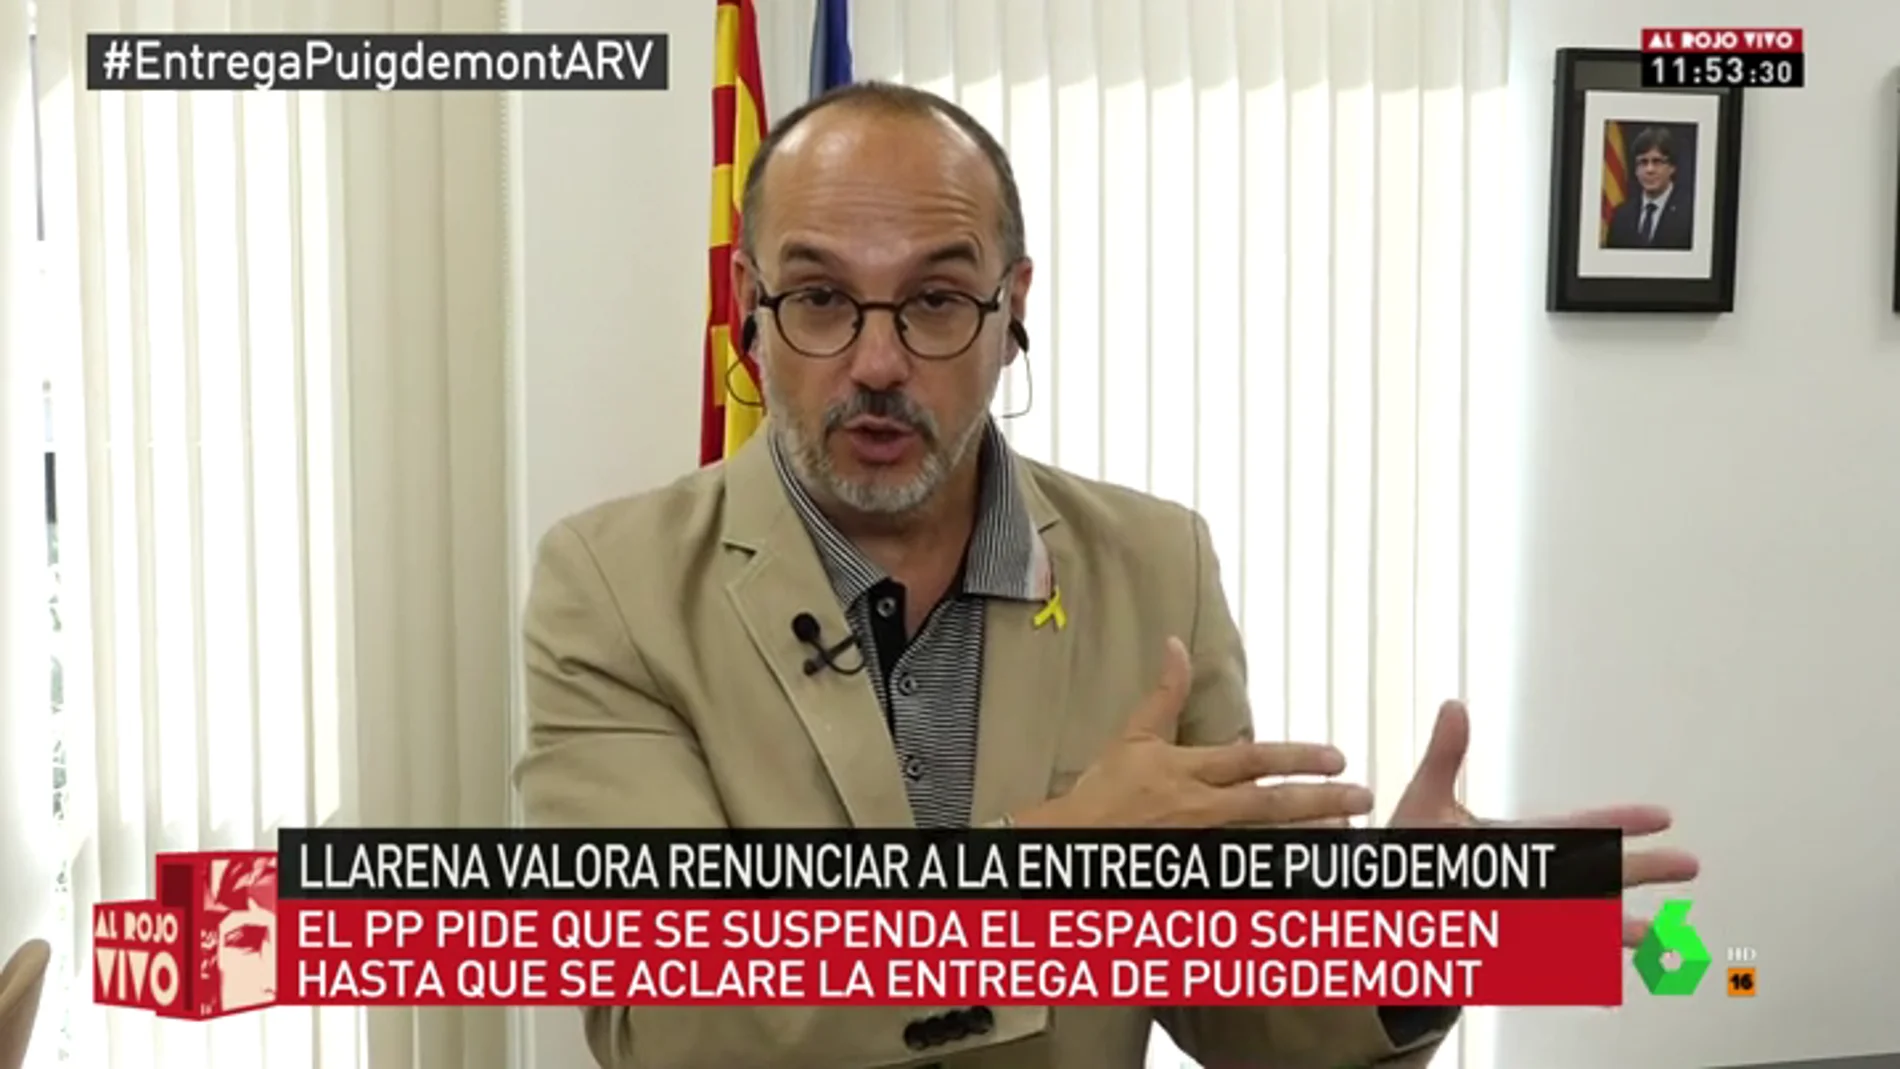 Carles Campuzano, contento con el fallo alemán sobre Puigdemont: "El PP se siente herido en el orgullo patrio español"